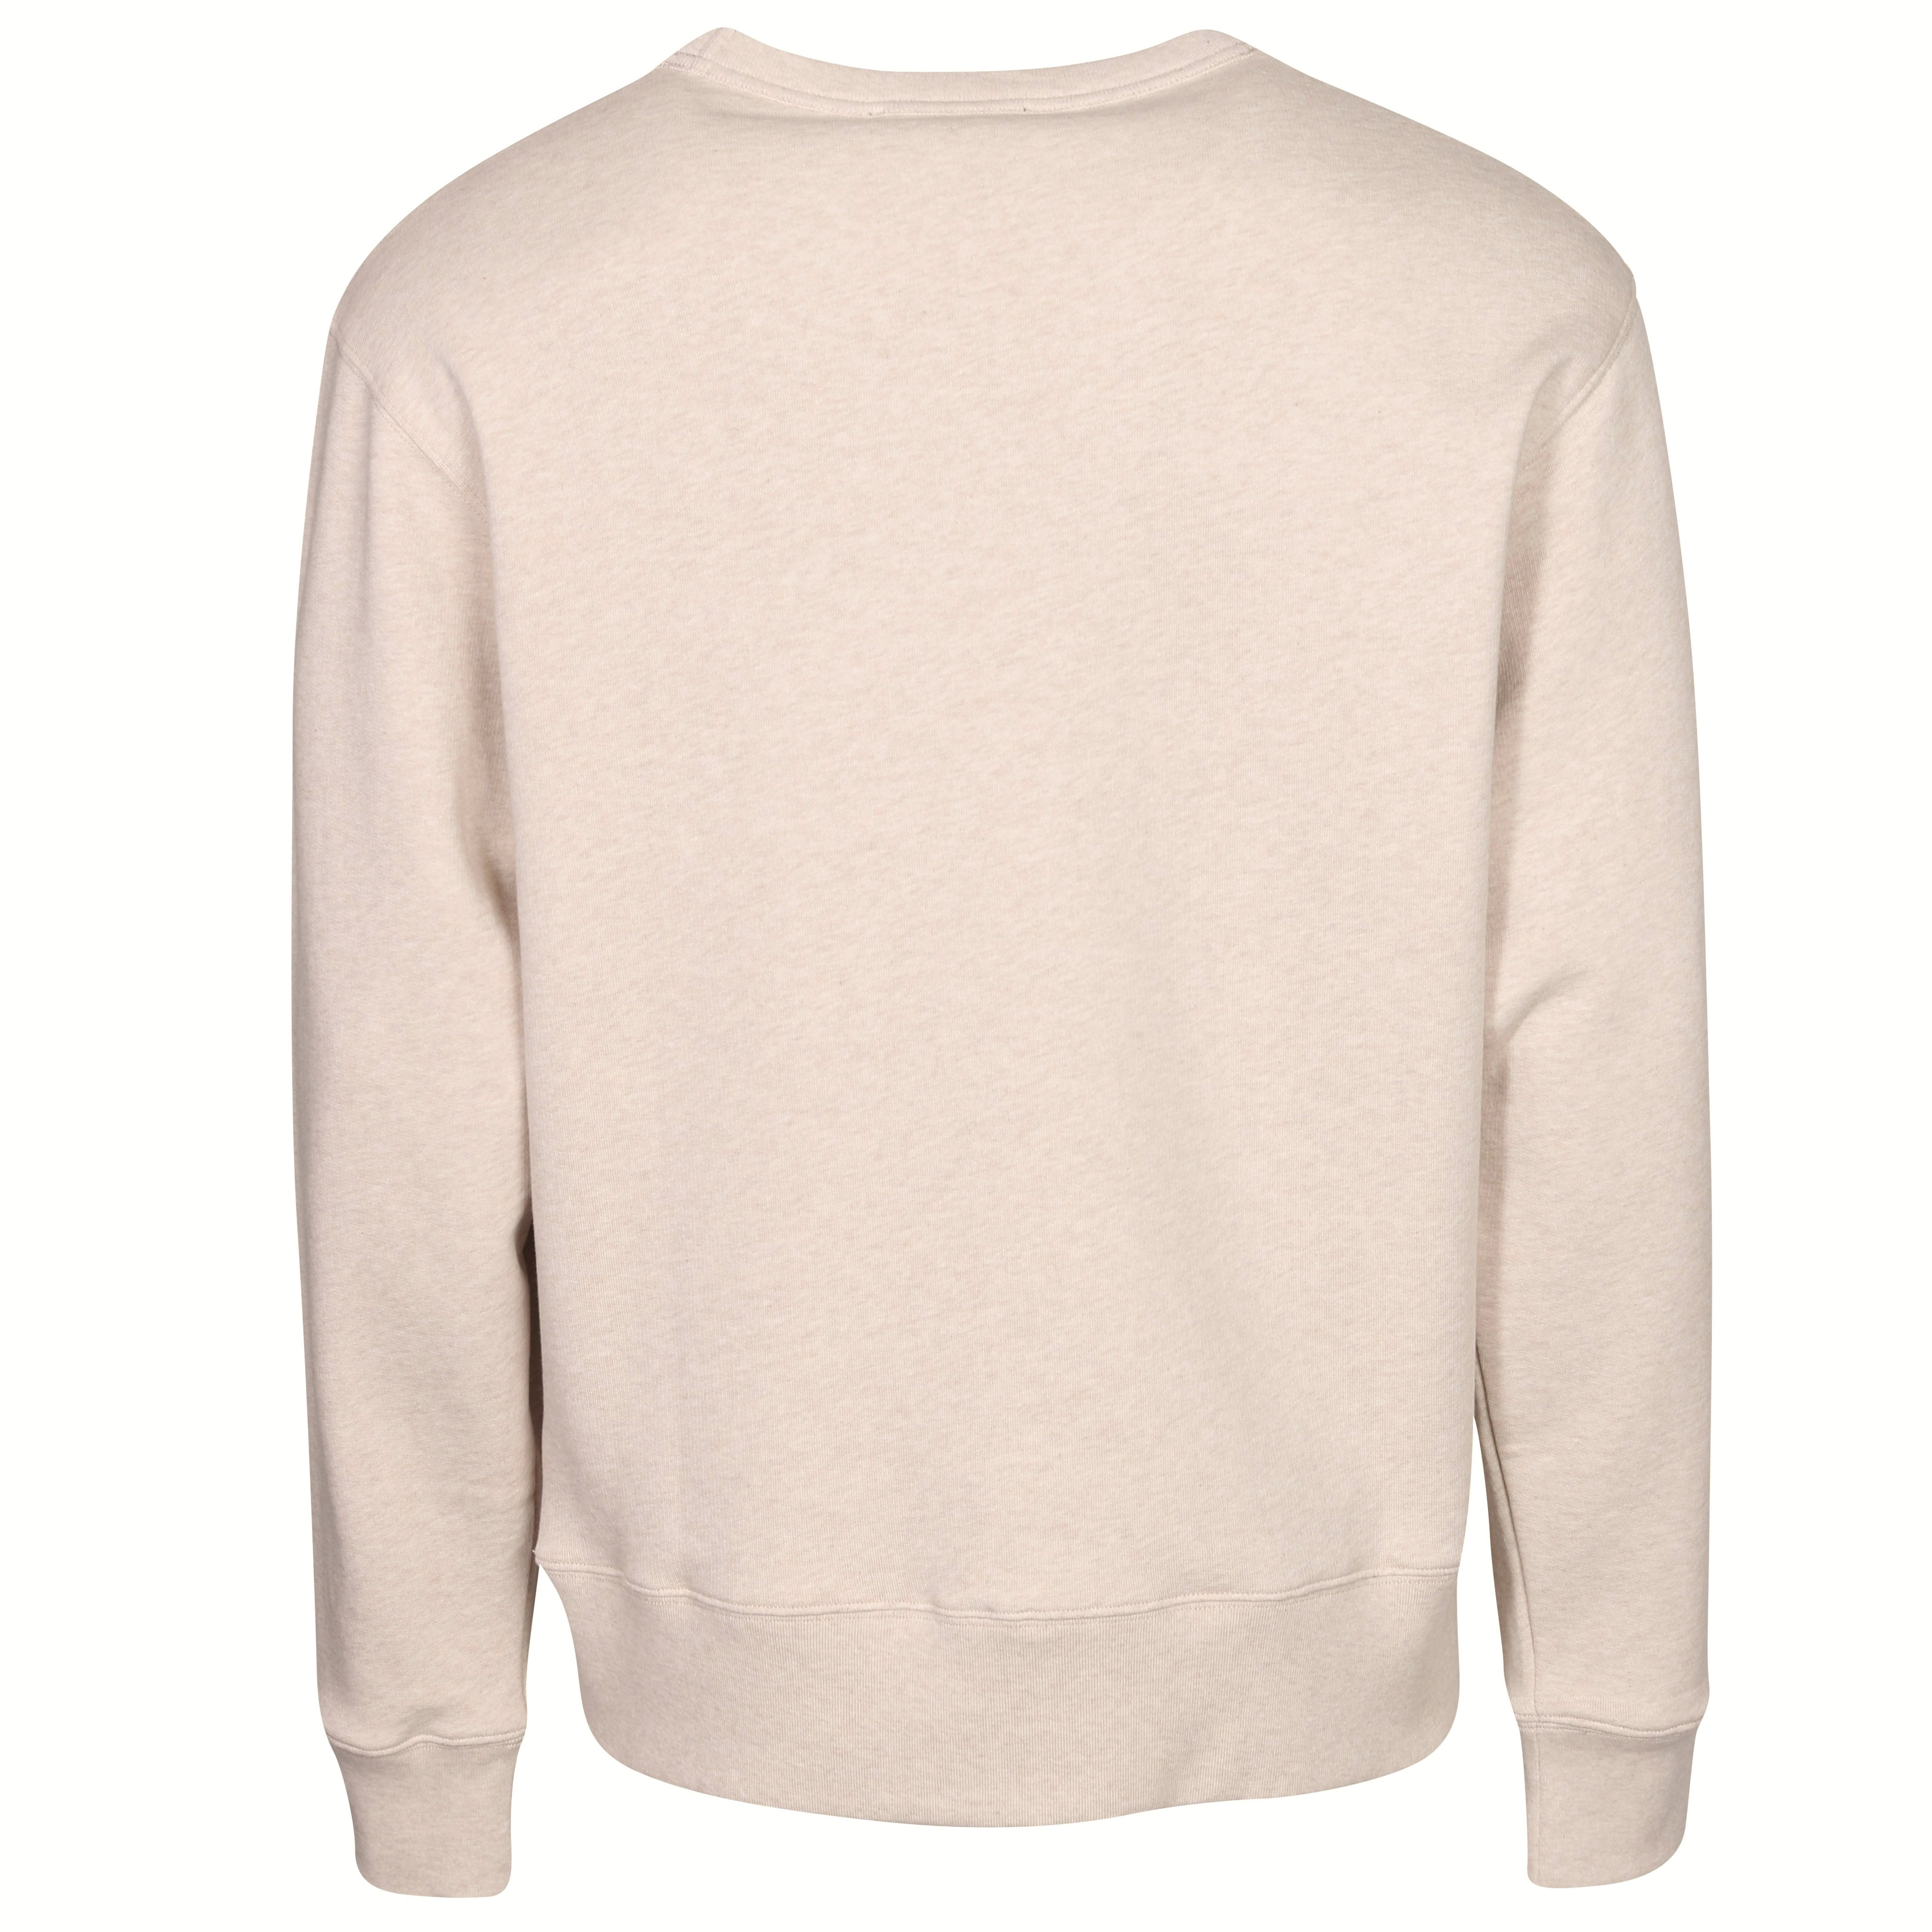 Acne Studios Face Sweatshirt in Oatmeal Melange